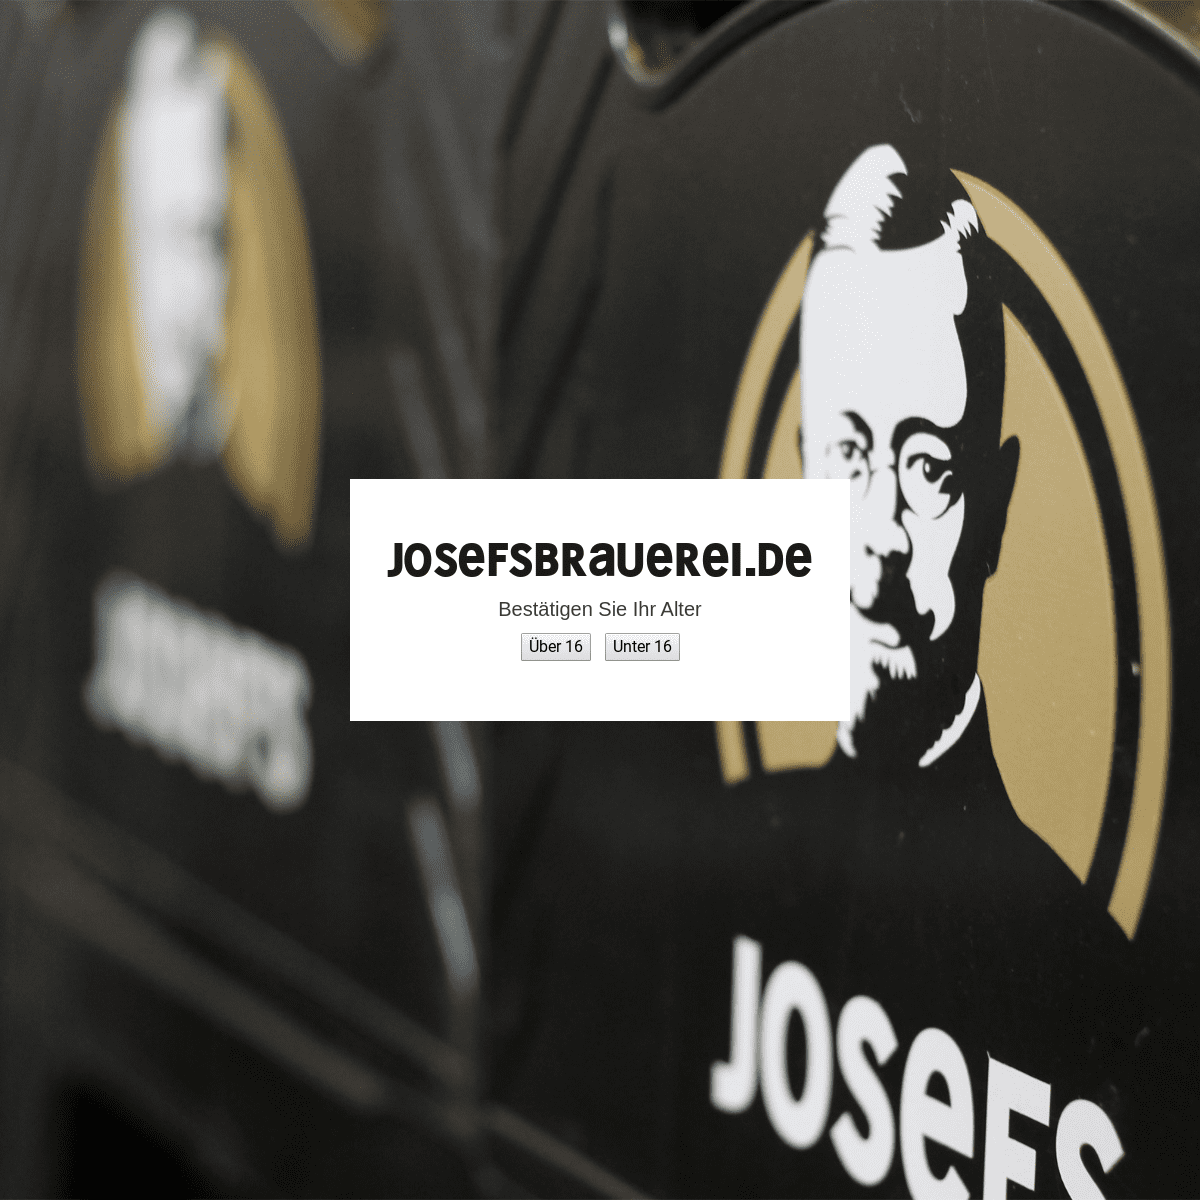 A complete backup of josefsbrauerei.de